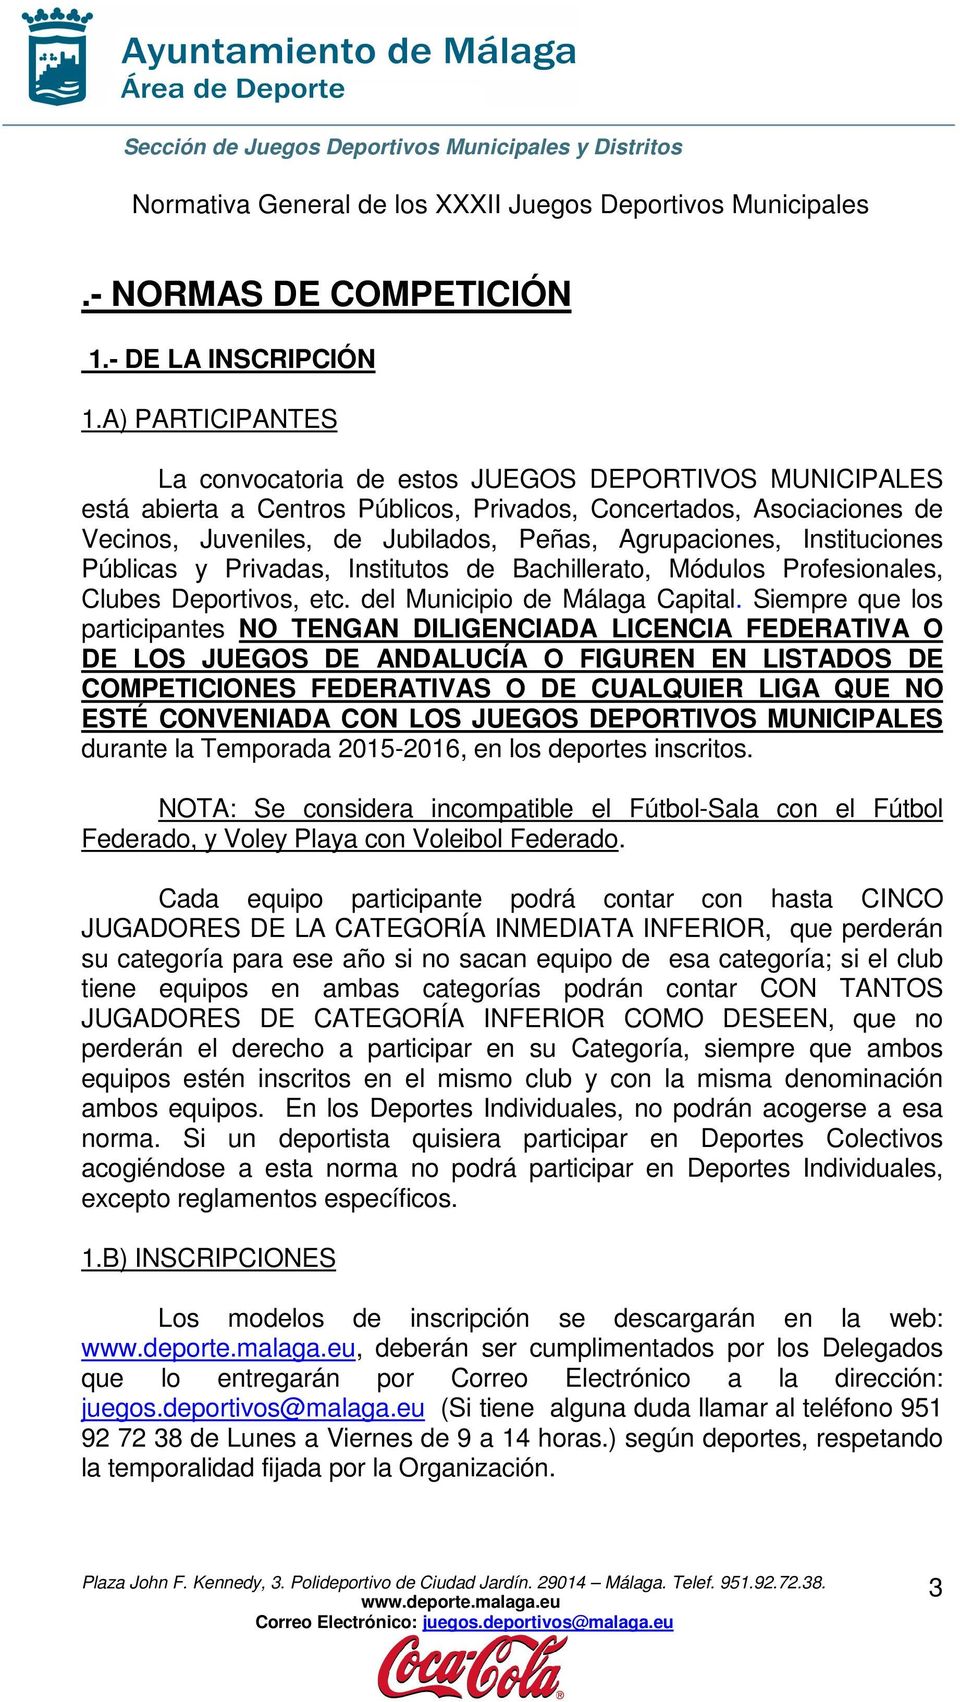 Instituciones Públicas y Privadas, Institutos de Bachillerato, Módulos Profesionales, Clubes Deportivos, etc. del Municipio de Málaga Capital.